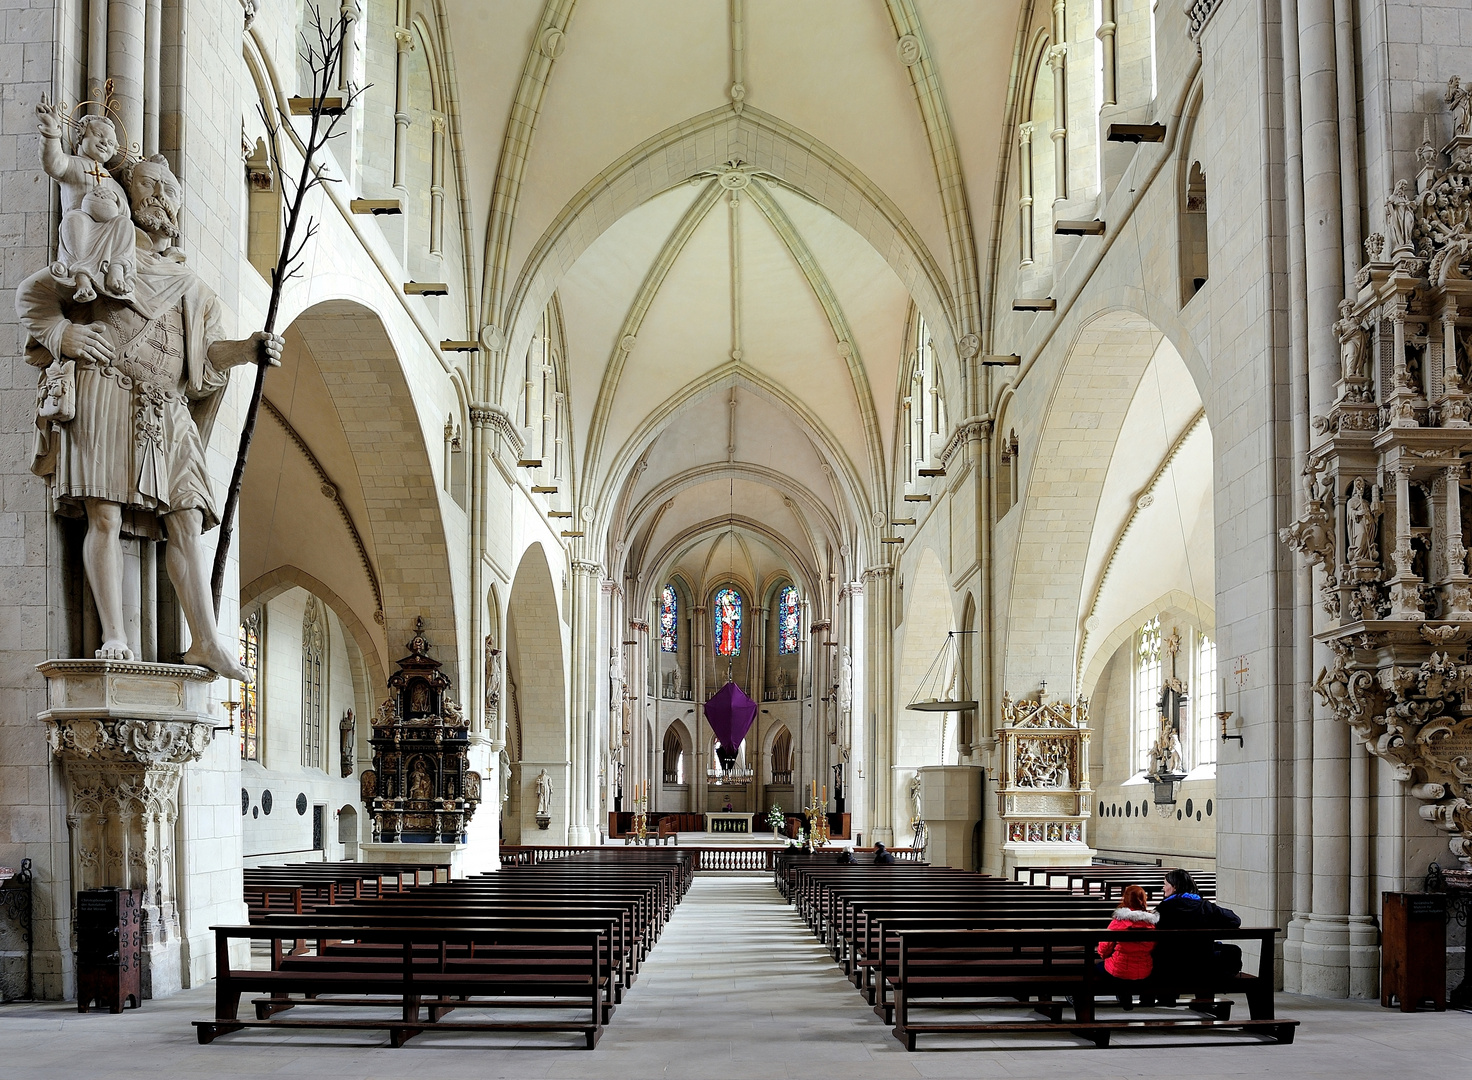 Dom zu Münster